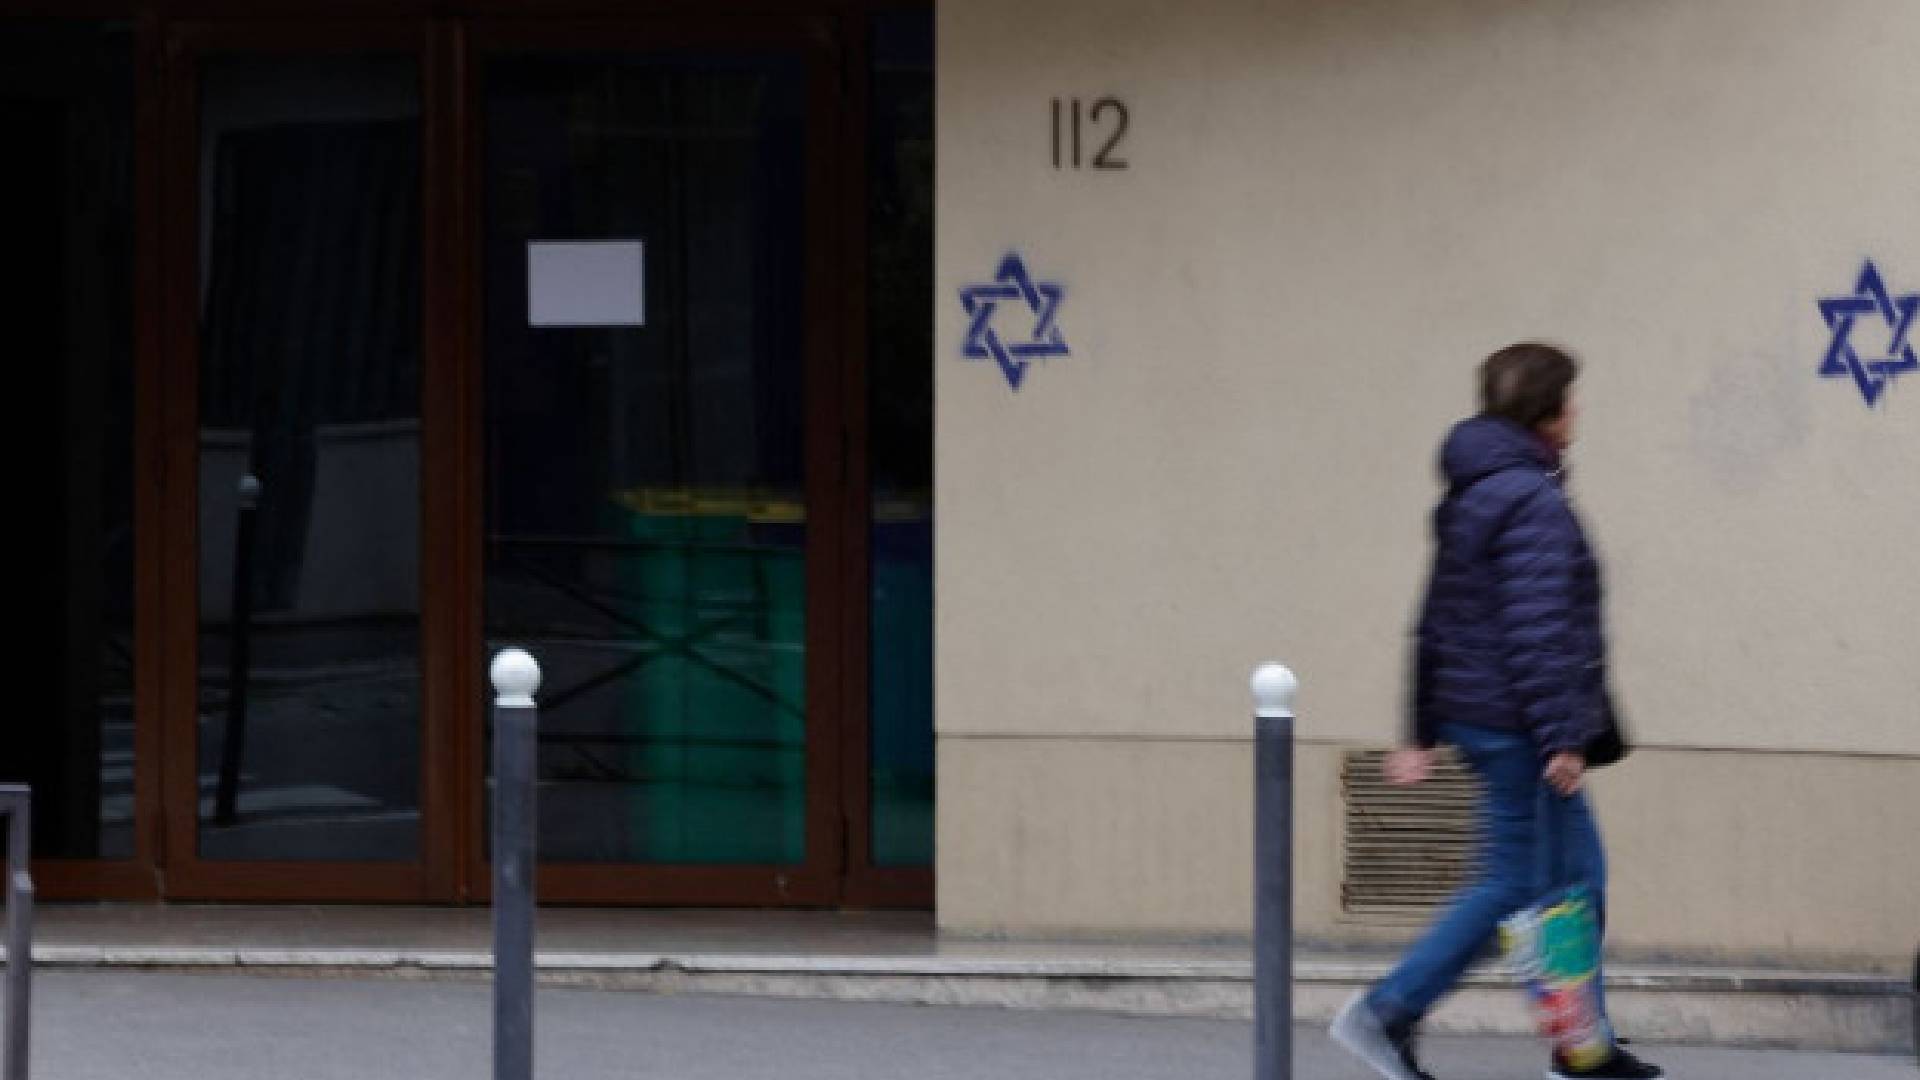 Mujer judía apuñalada en Francia y tallan en la puerta de su casa una esvástica